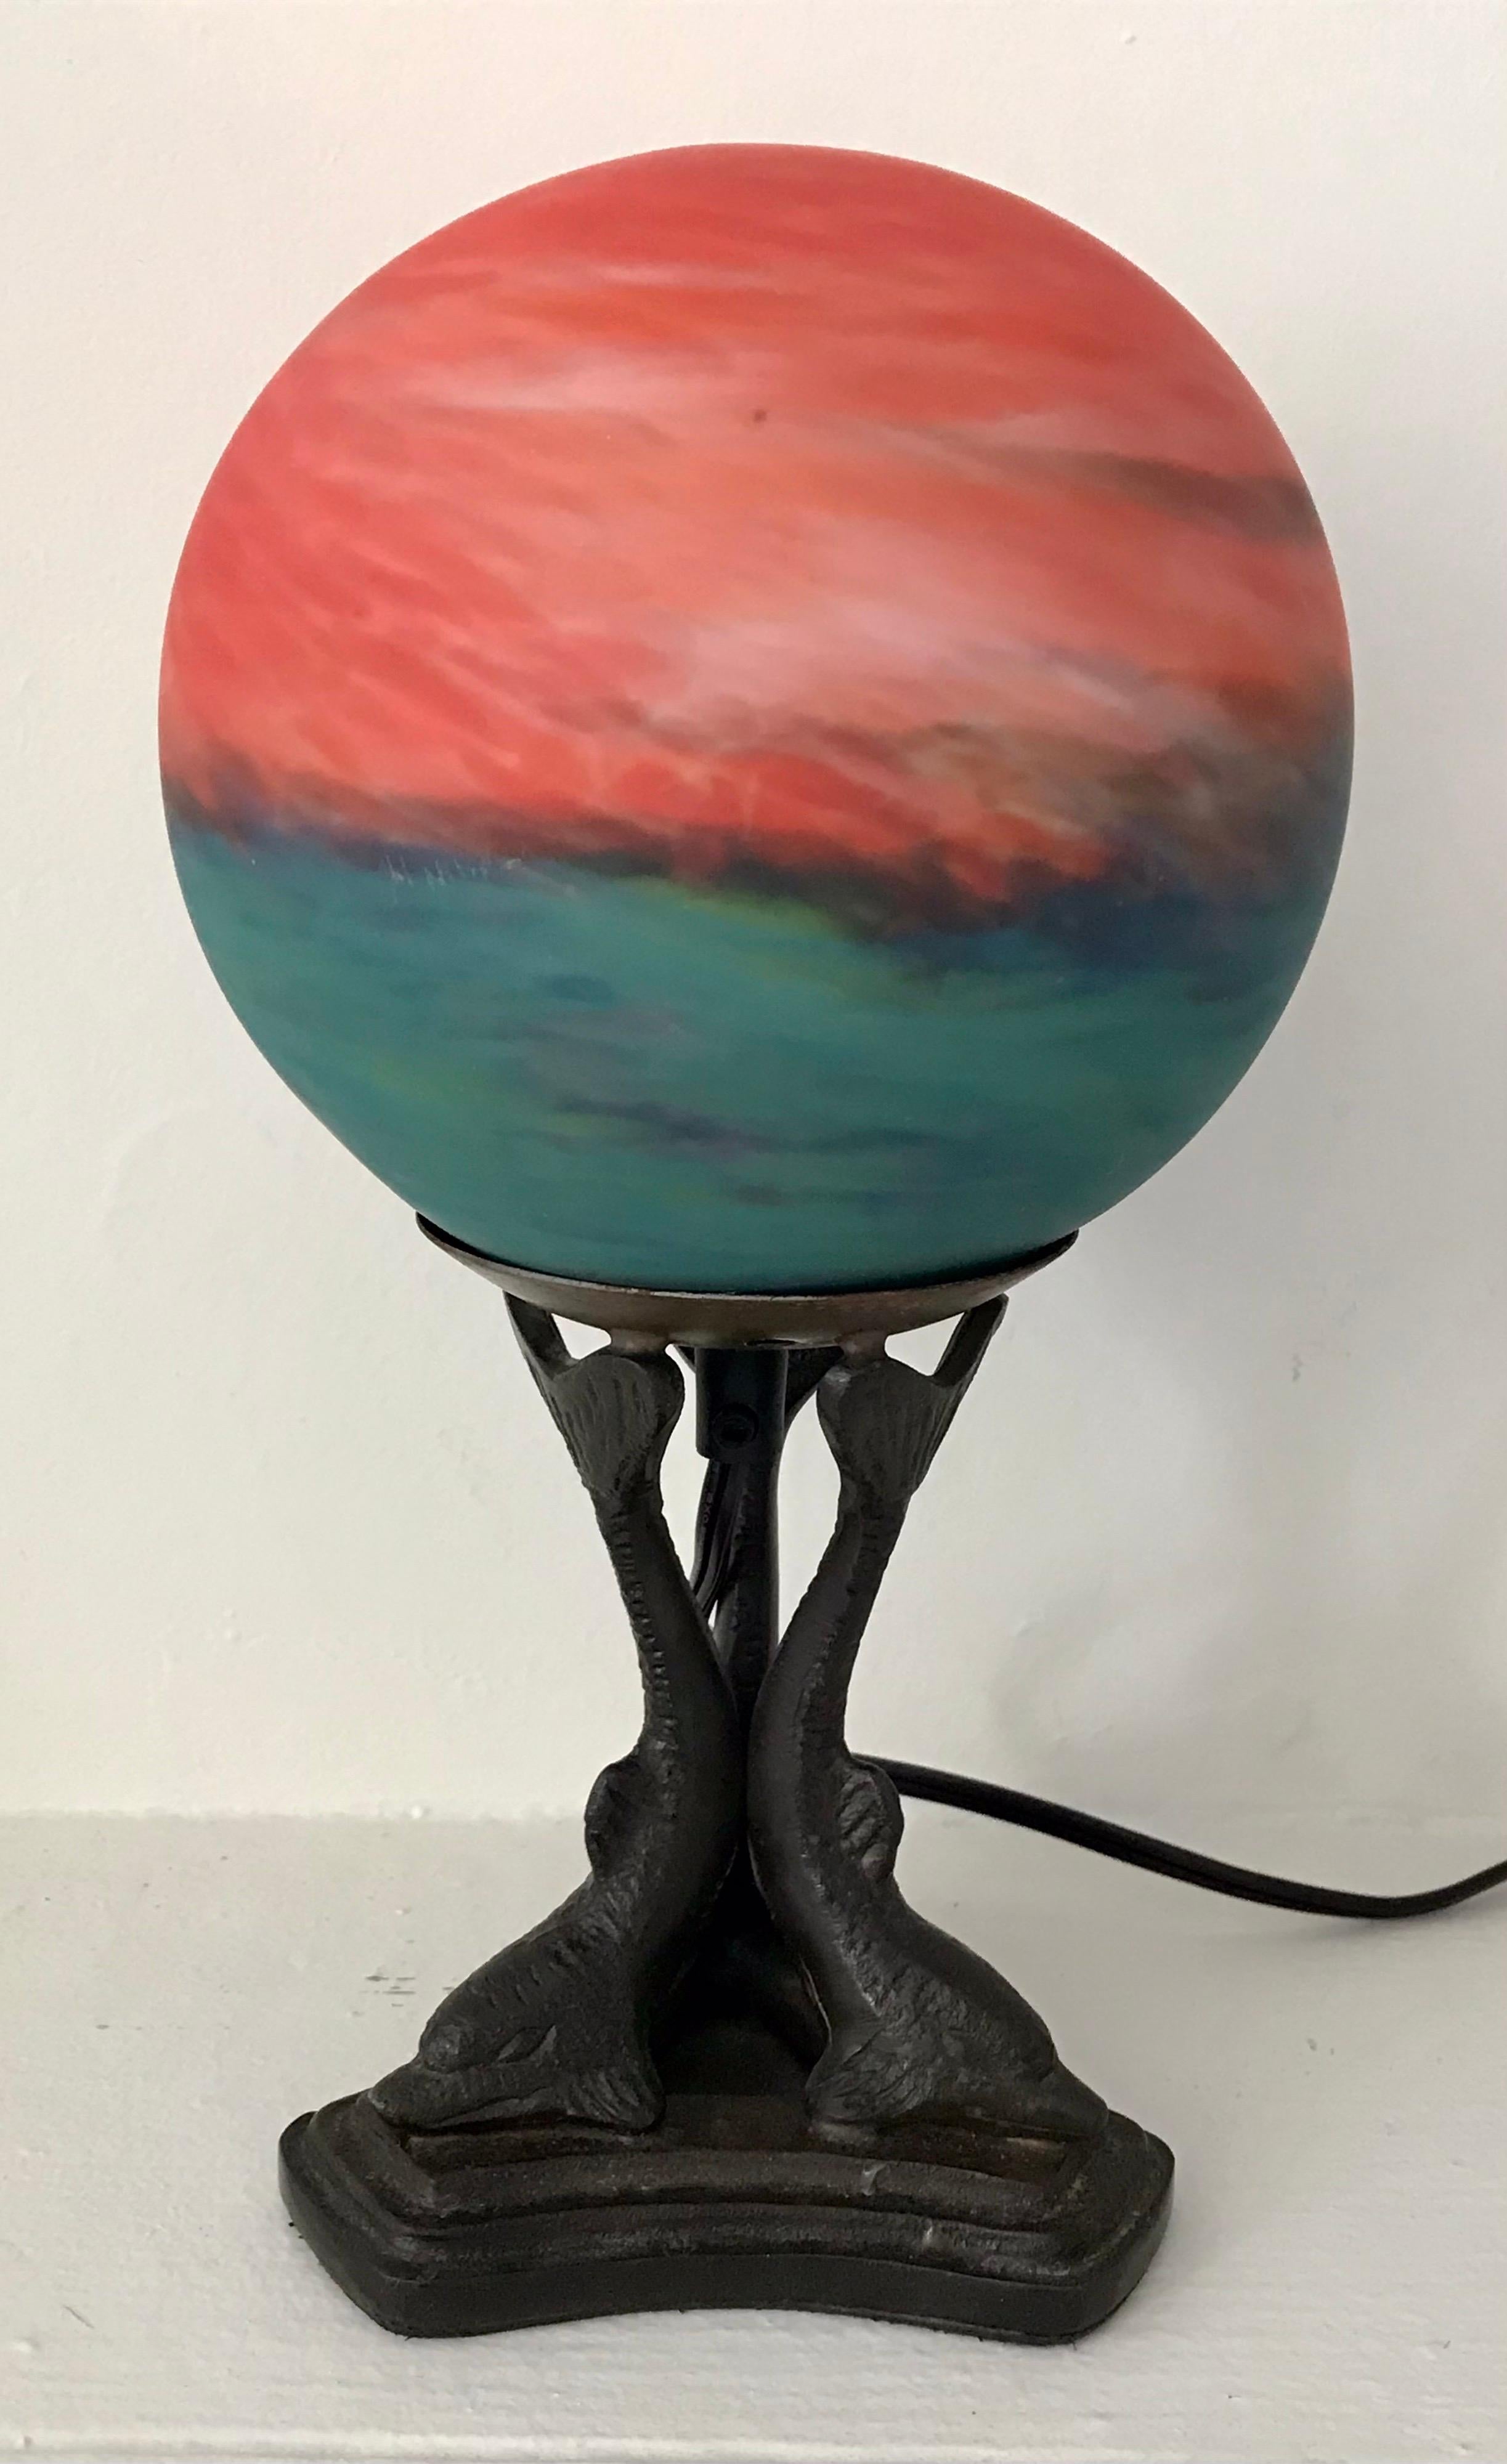 Belle lampe de table en verre d'art coloré montée sur une base en métal moulé en forme de dauphin, 20ème siècle, reconnectée avec un interrupteur en ligne.